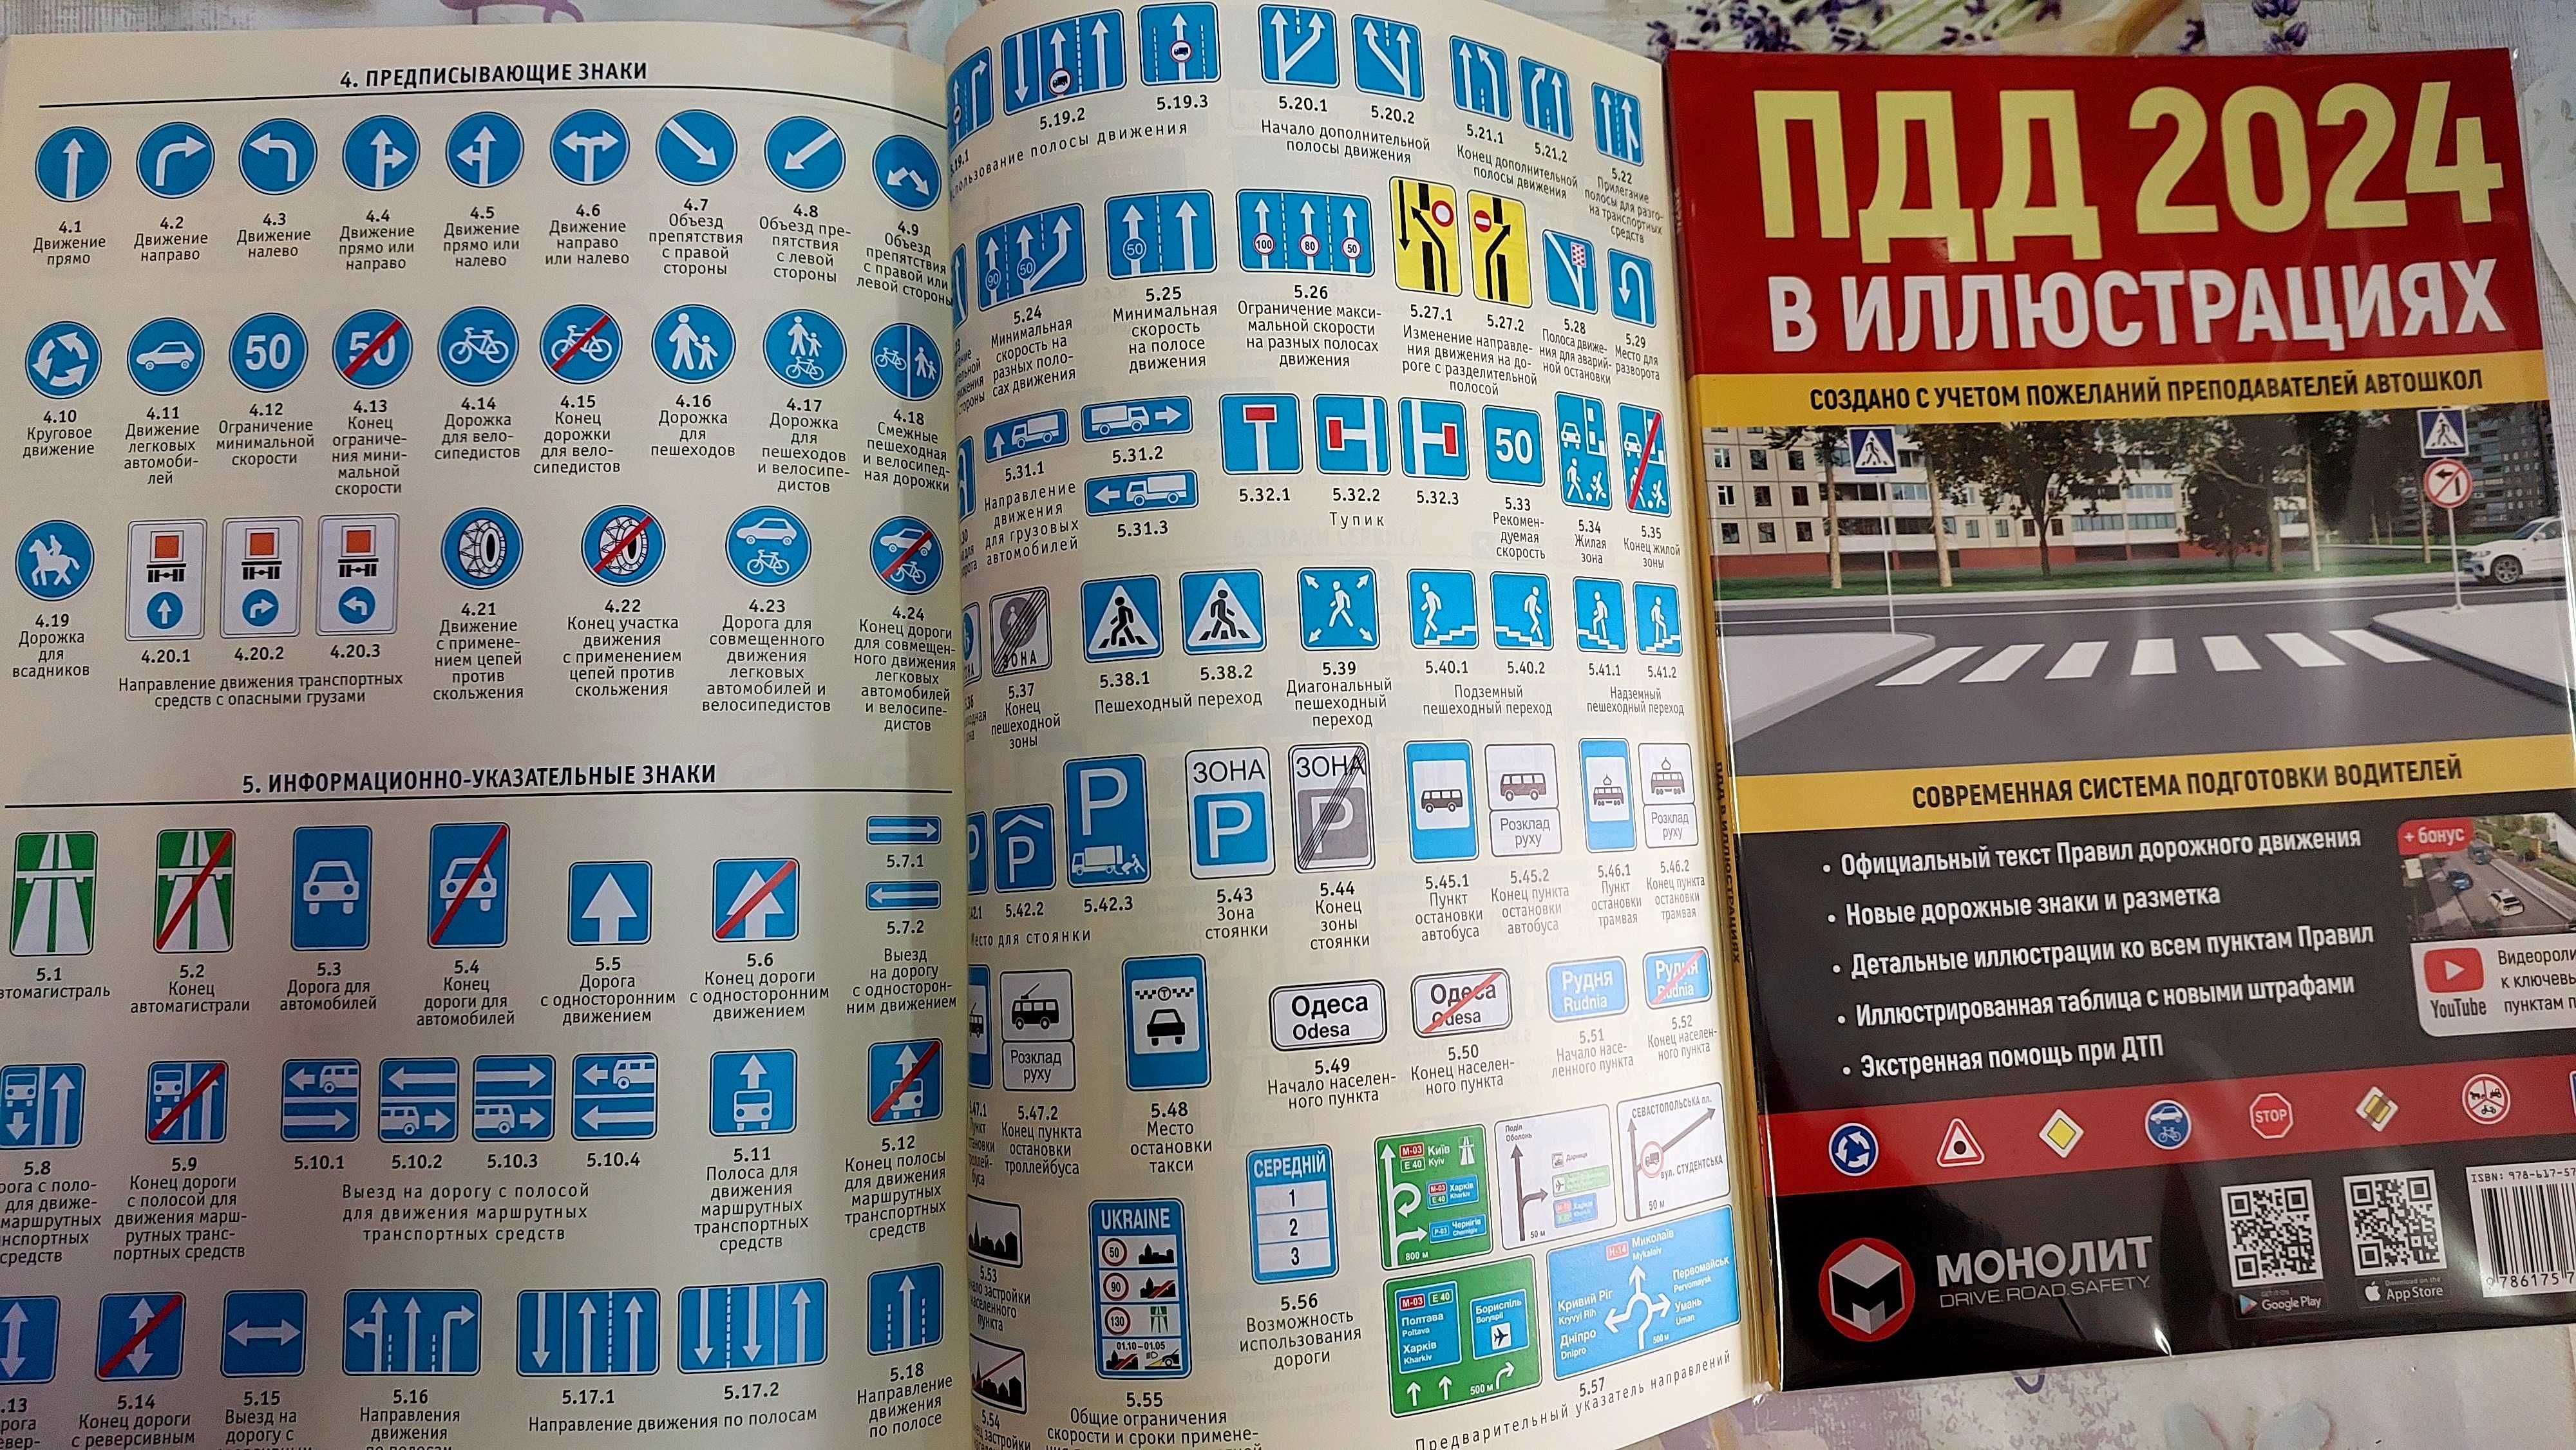 Правила дорожного движения Украины в иллюстрациях 2024 Монолит